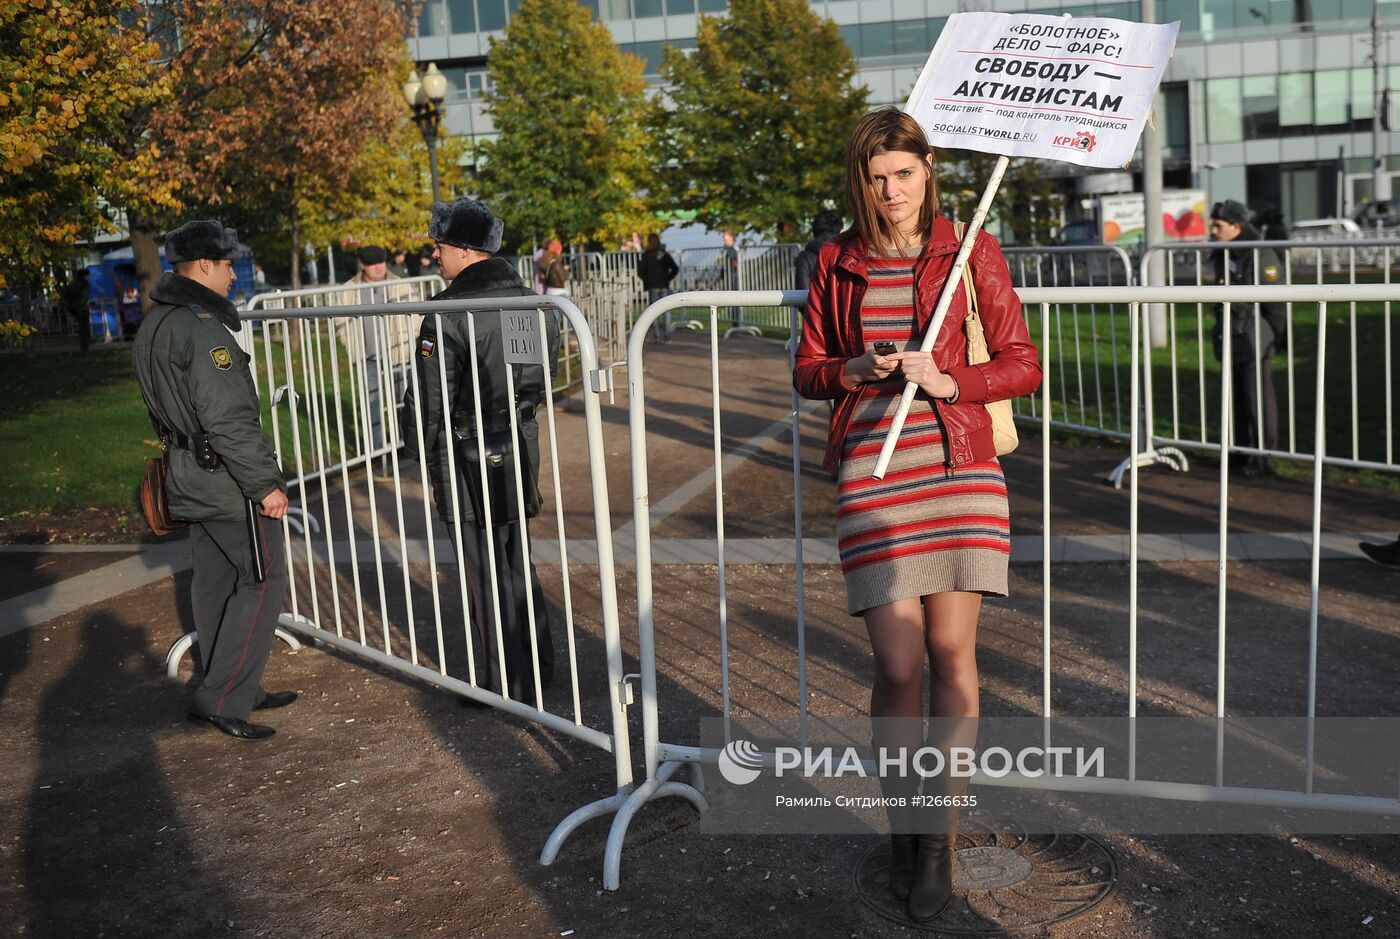 Митинг в поддержку выборов в КС оппозиции в Москве